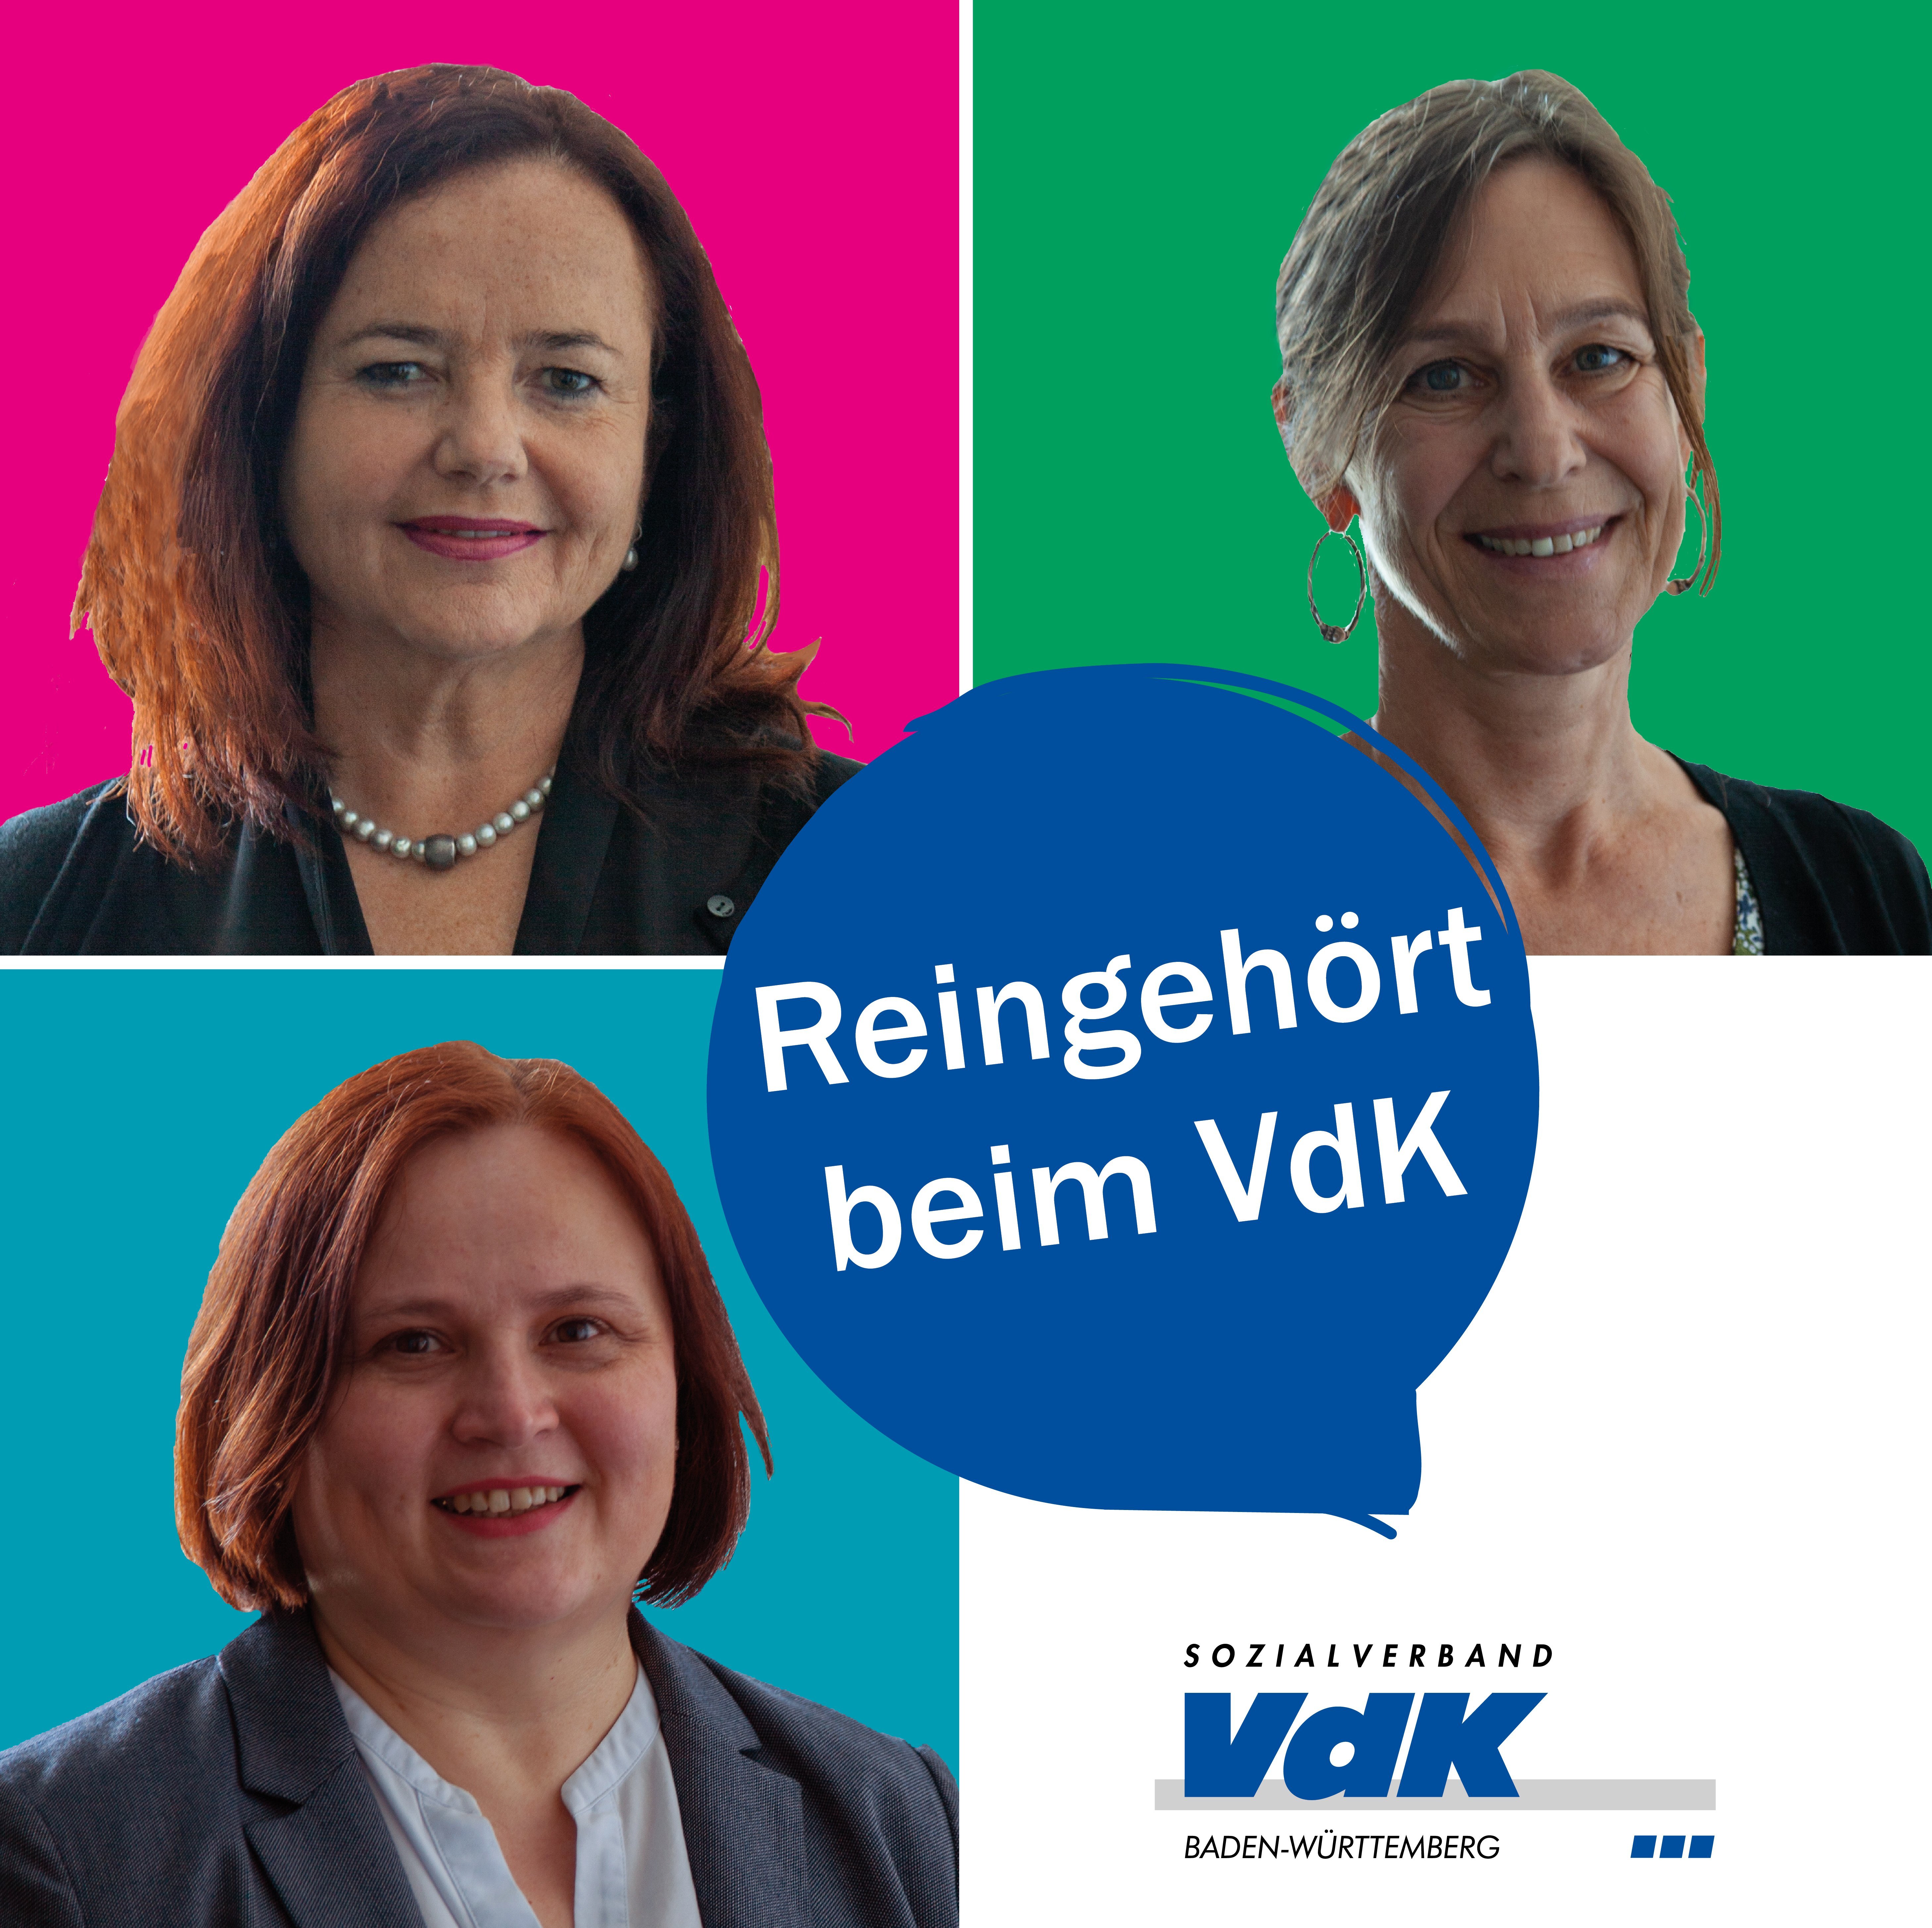 Cover des Podcasts "Reingehört" - darauf sind Portraits der drei Patientenberaterinnen zu sehen, die den Podcast machen sowie das VdK BW Logo